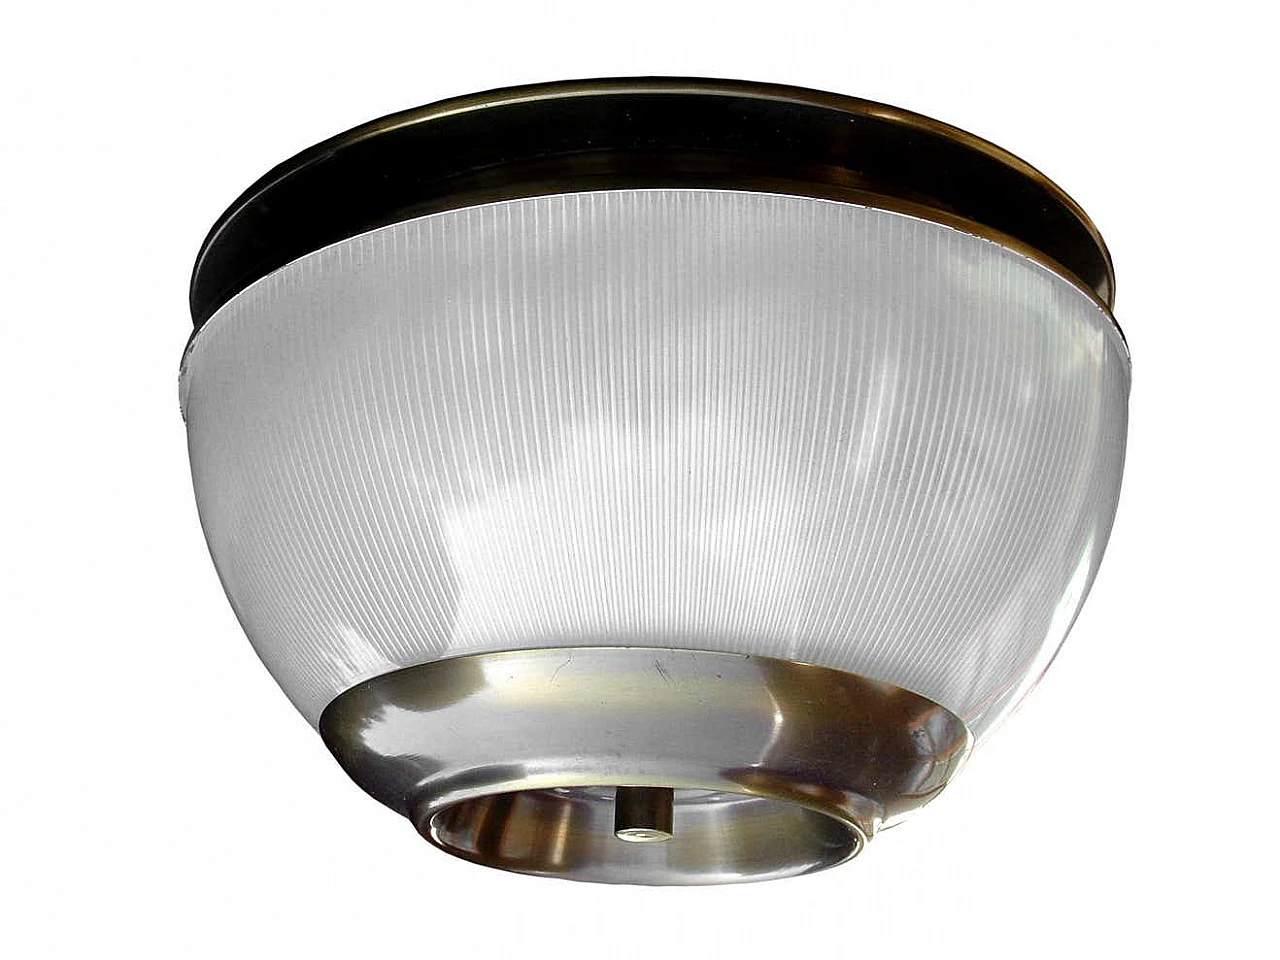 Lsp3 ceiling lamp by Luigi Caccia Dominioni for Azucena, 1960s 2